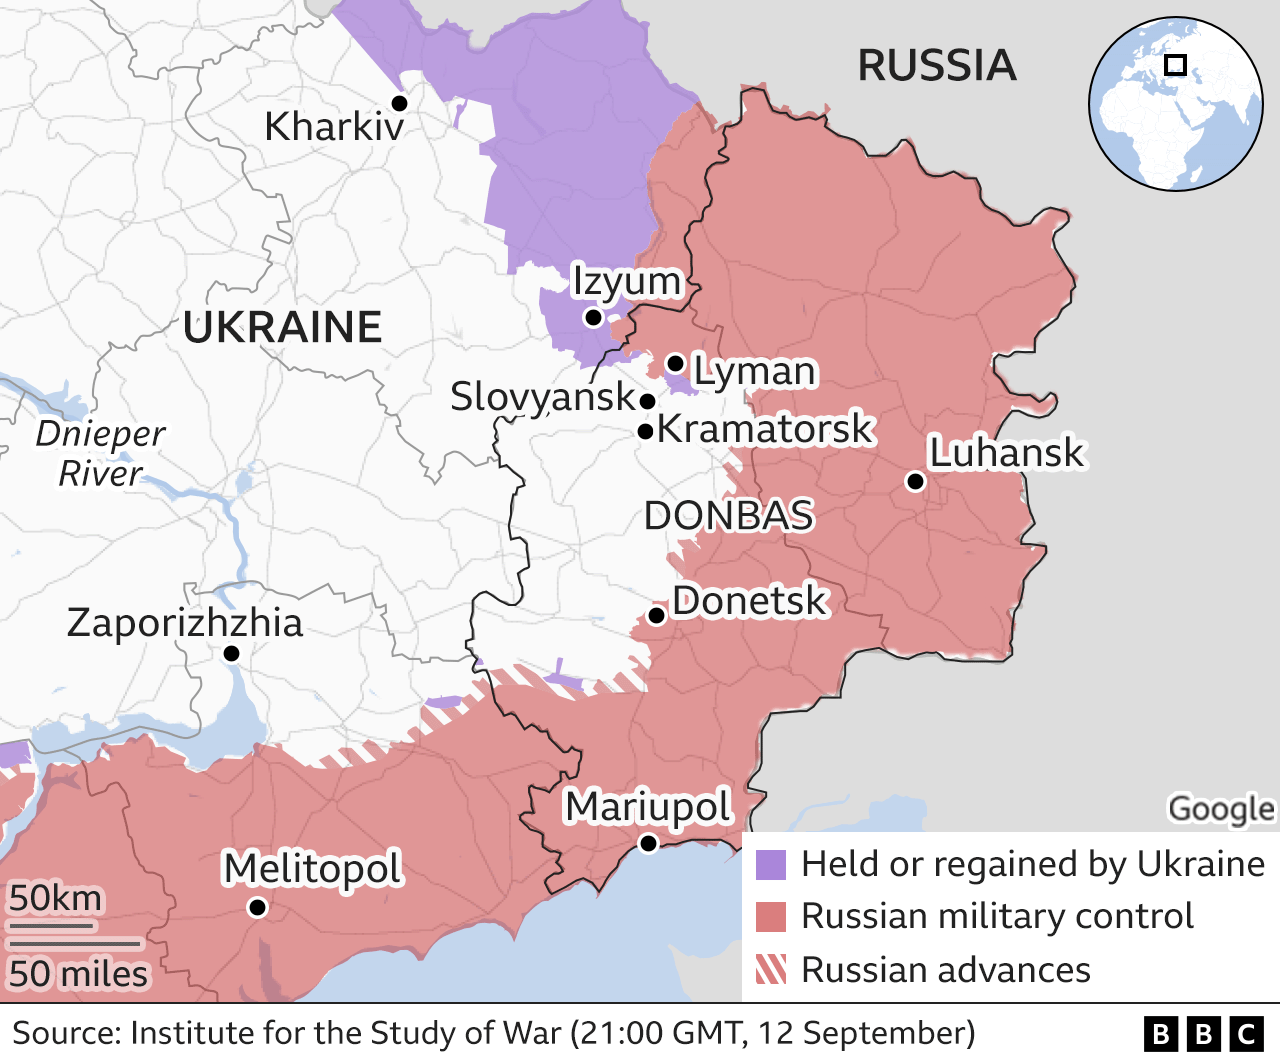 deadly-donetsk-blasts-hit-separatist-run-city-in-ukraine-bbc-news